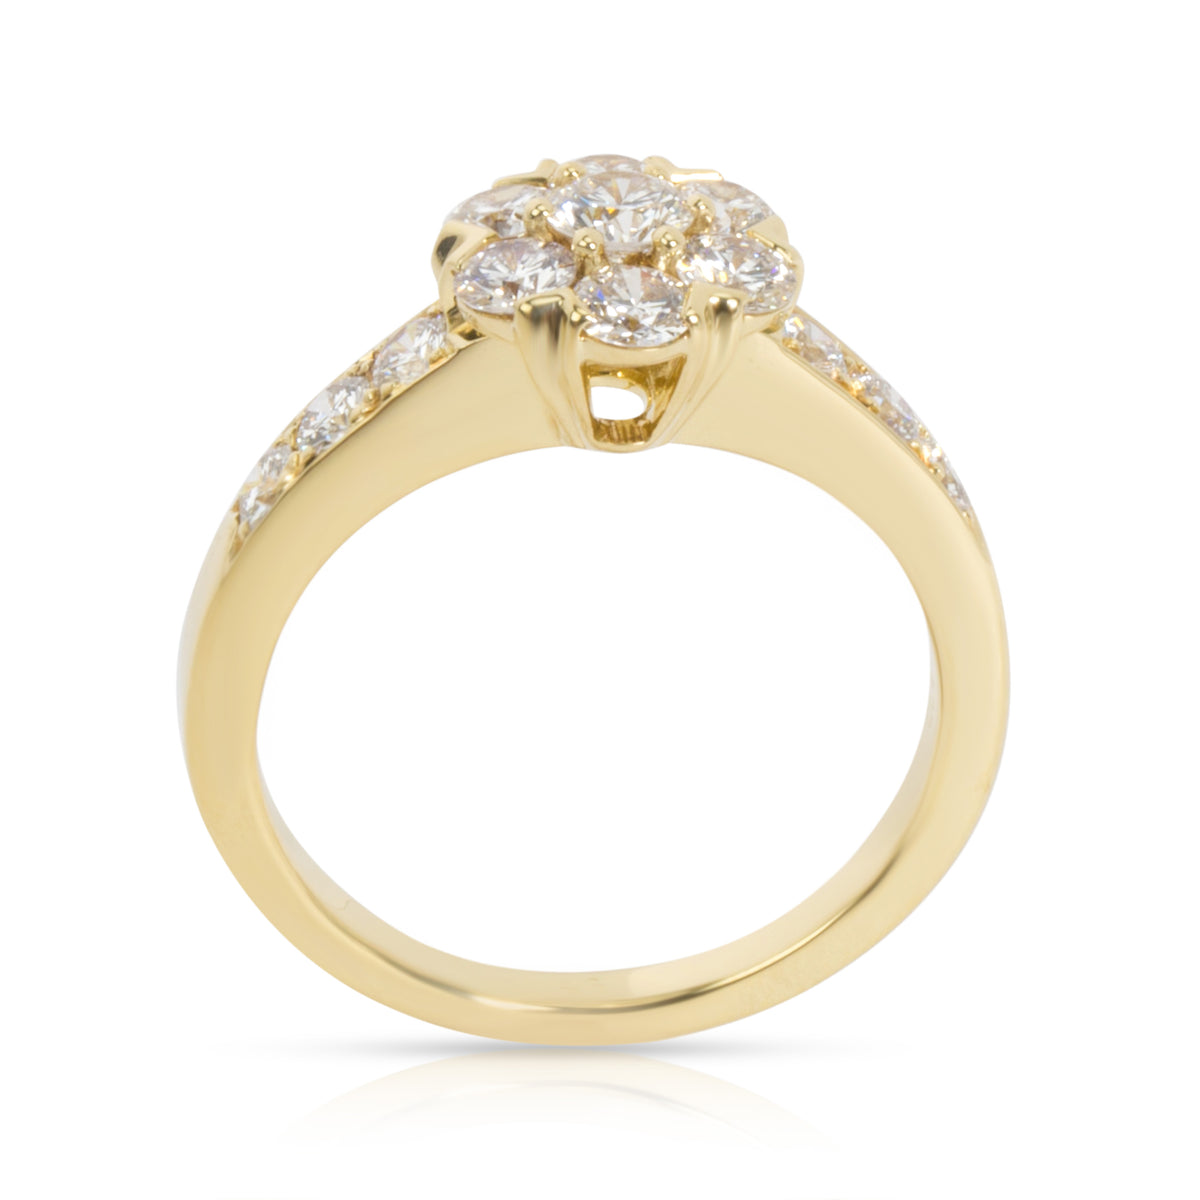 Van Cleef & Arpels Fleurette Diamond Ring in 18K Yellow Gold 0.74 CTW